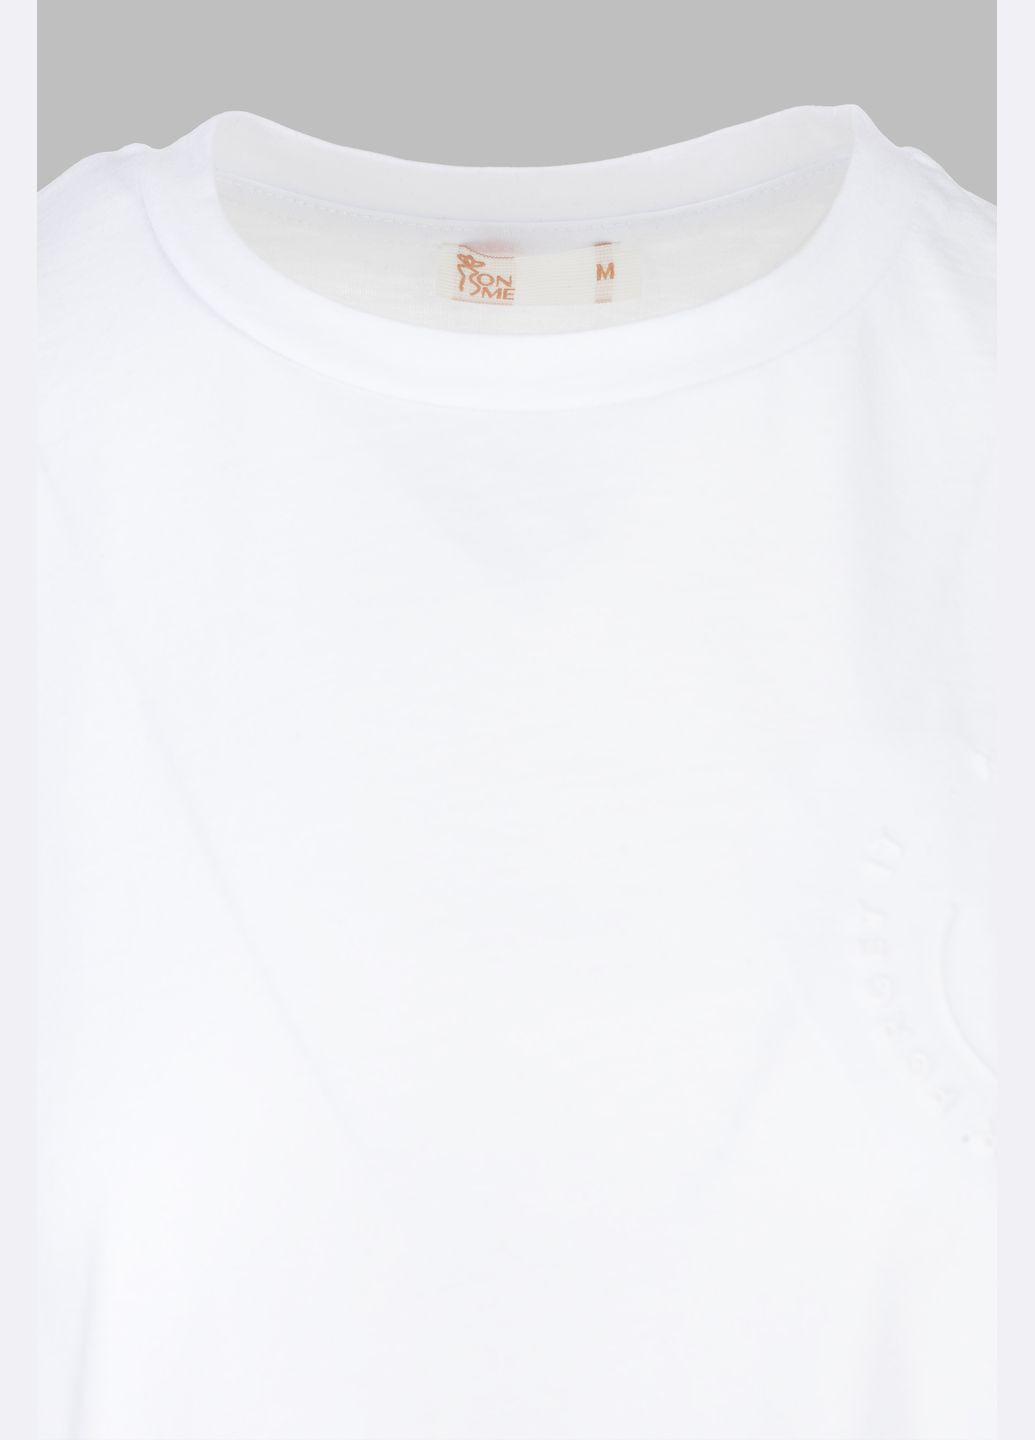 Белая летняя футболка PEPPER MINT